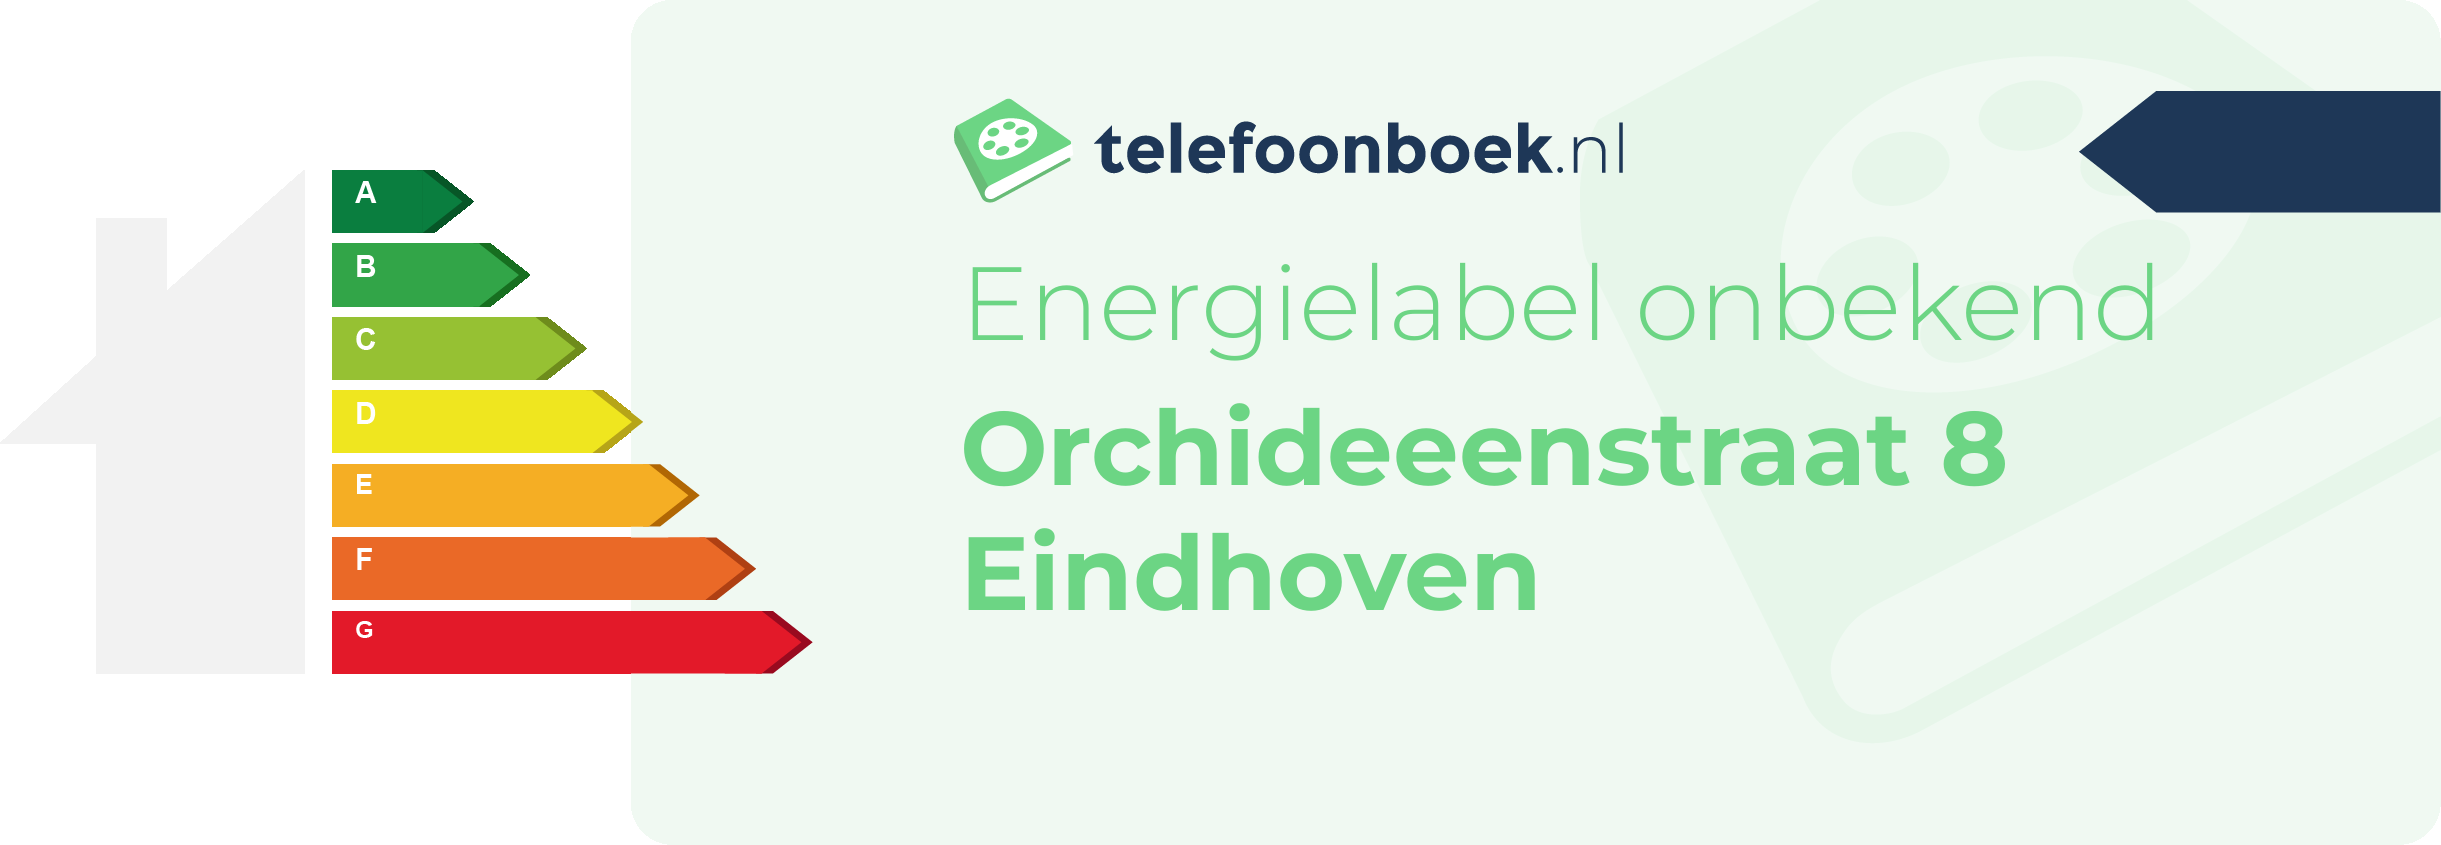 Energielabel Orchideeenstraat 8 Eindhoven